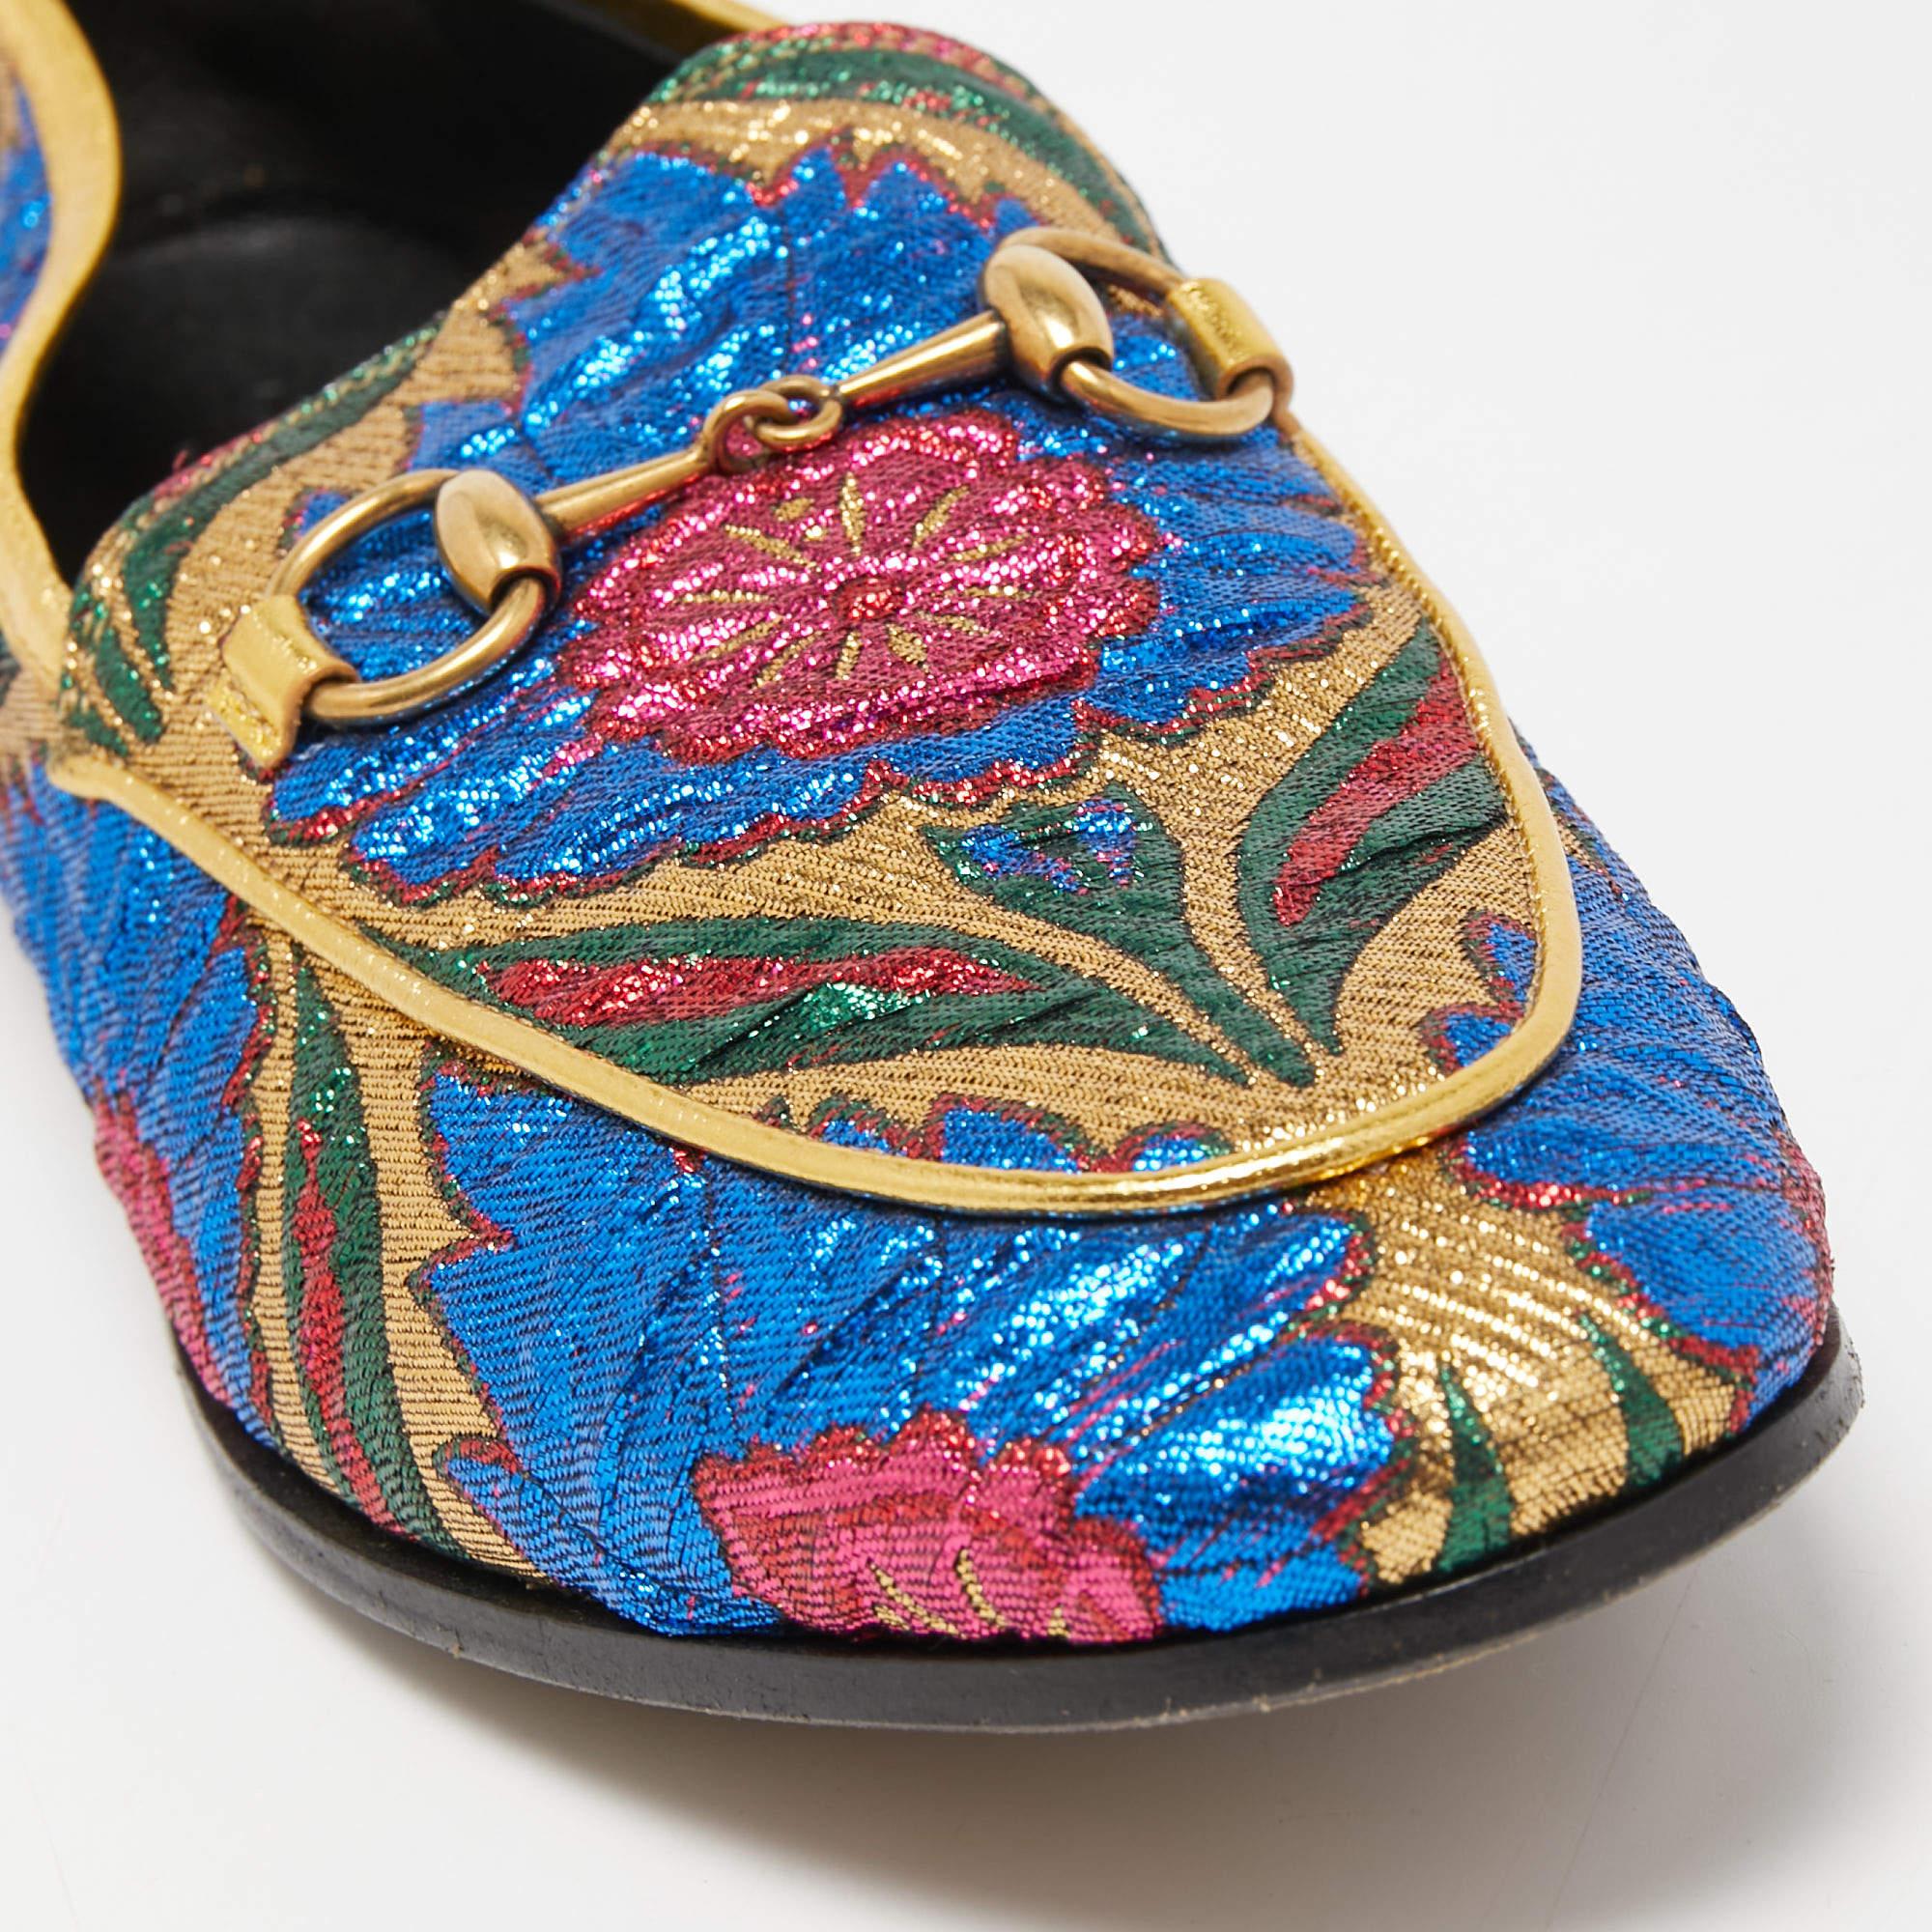 Gucci Multicolor Brocade Fabric Jordaan Loafers Size 35.5 3